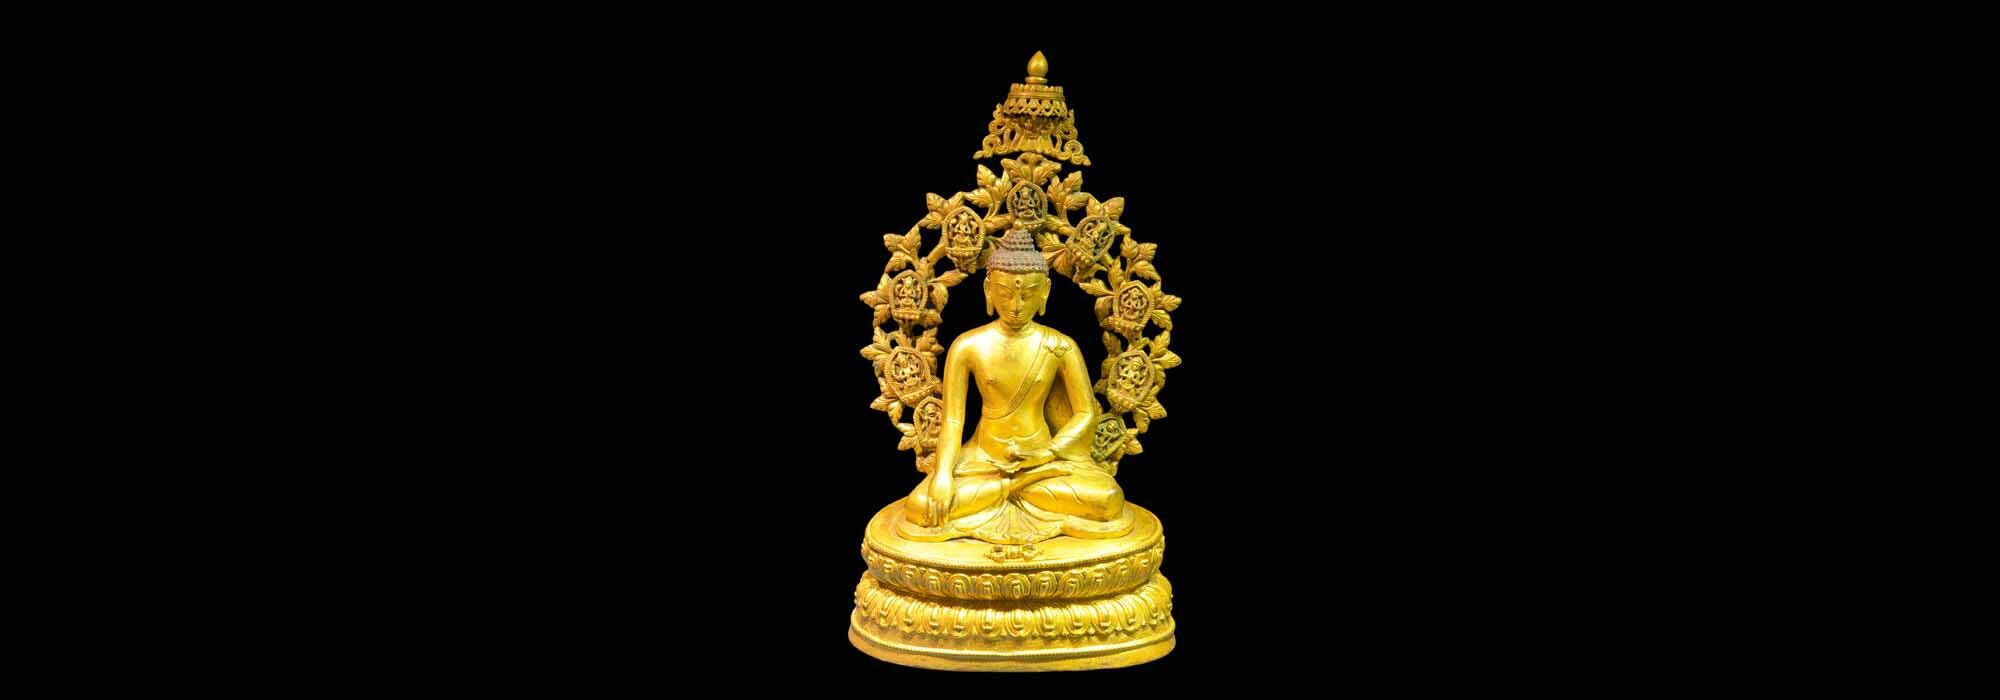 Budha-Sakyamuni